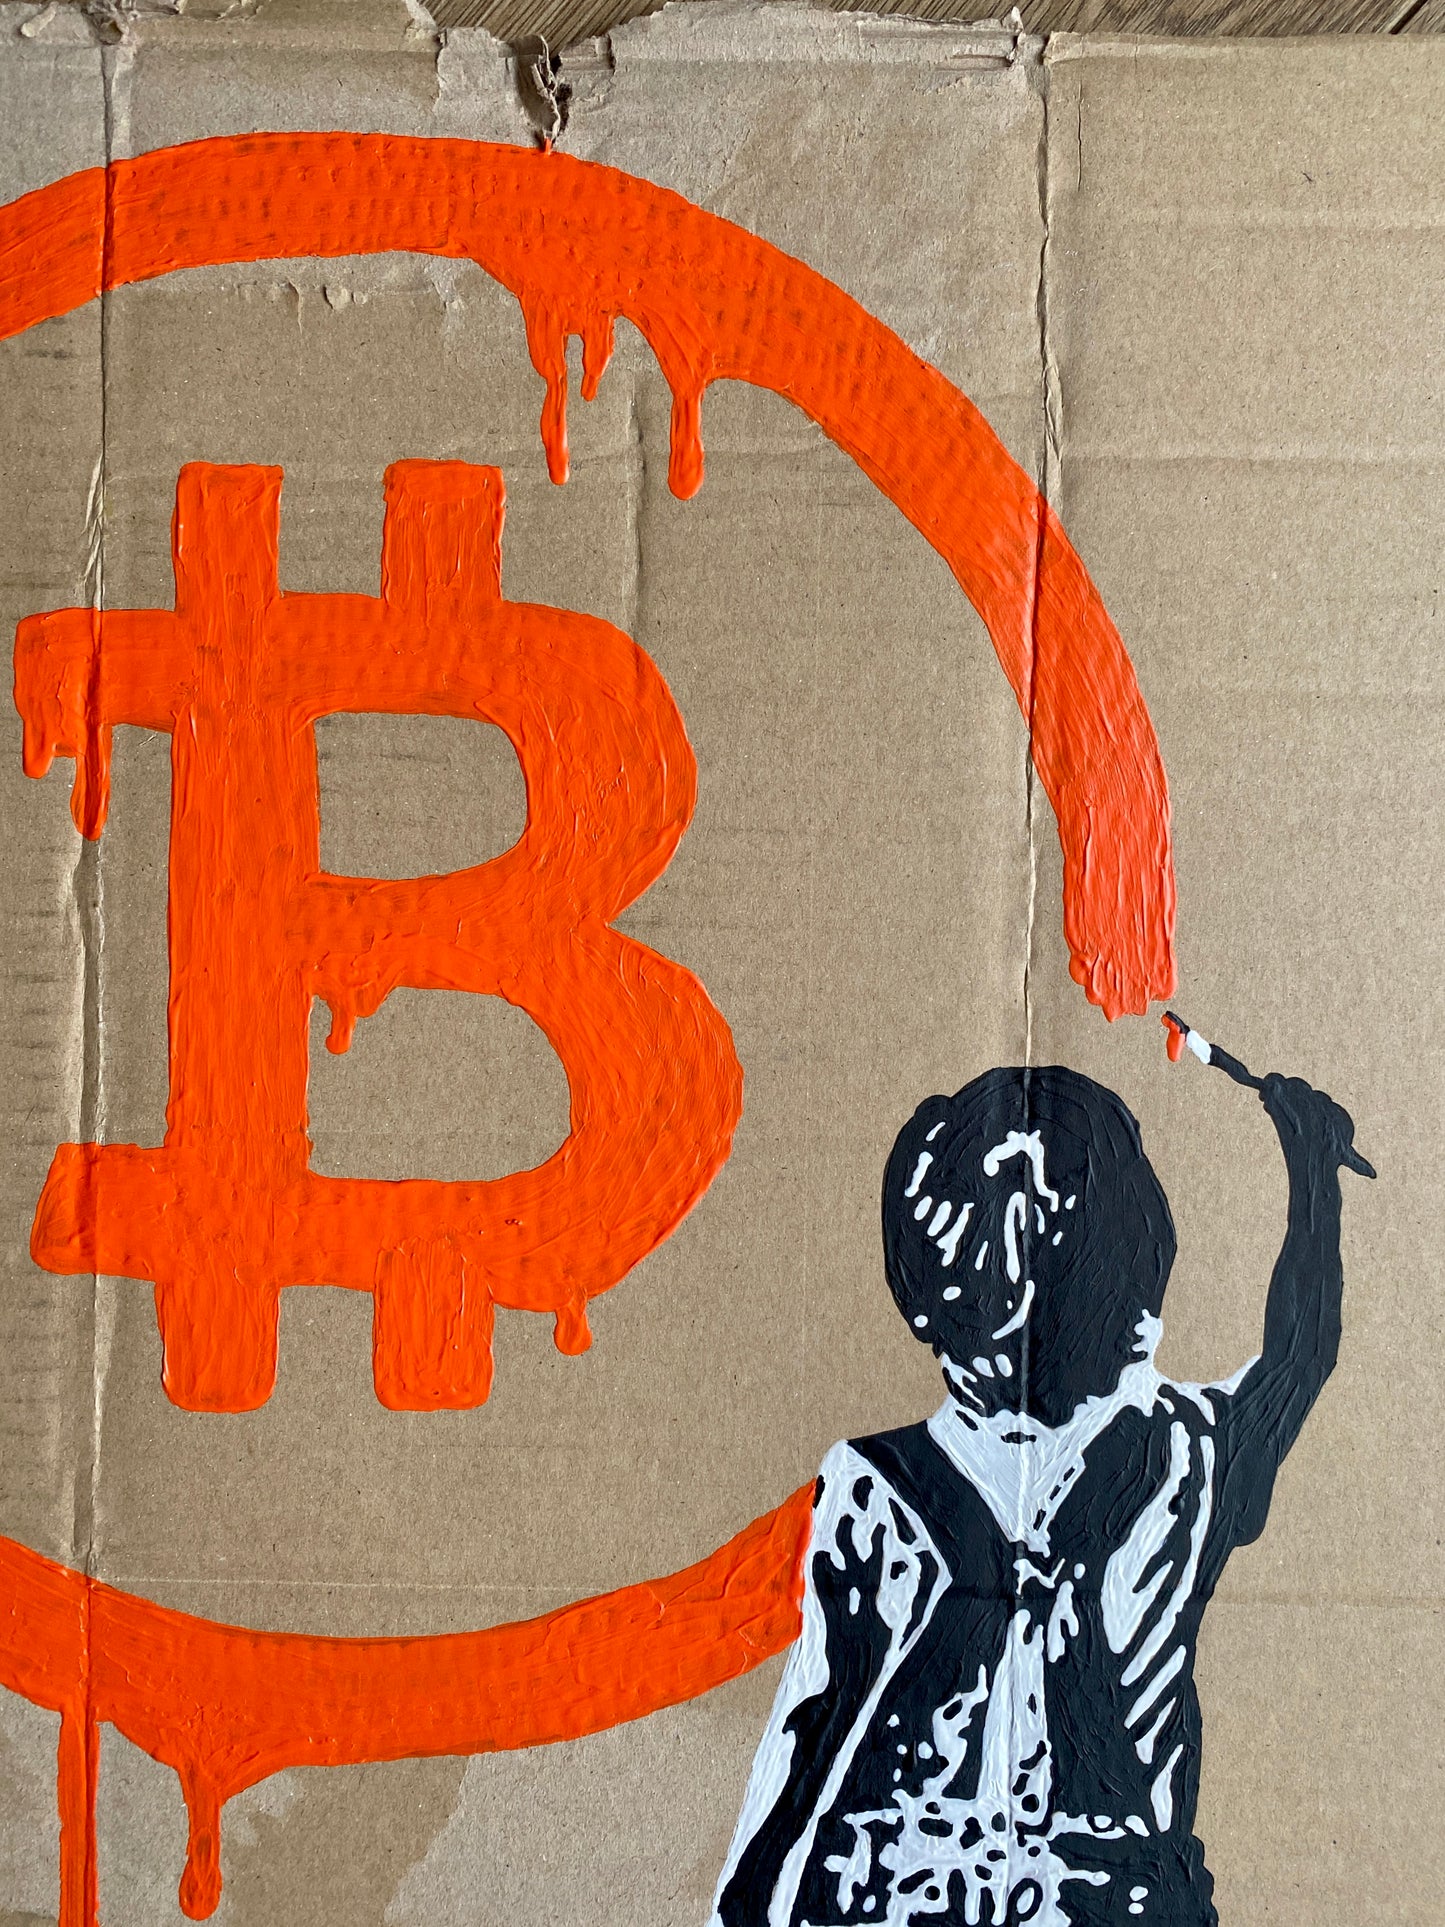 Acrylic Paint on Cardboard "Bitcoin Boy"